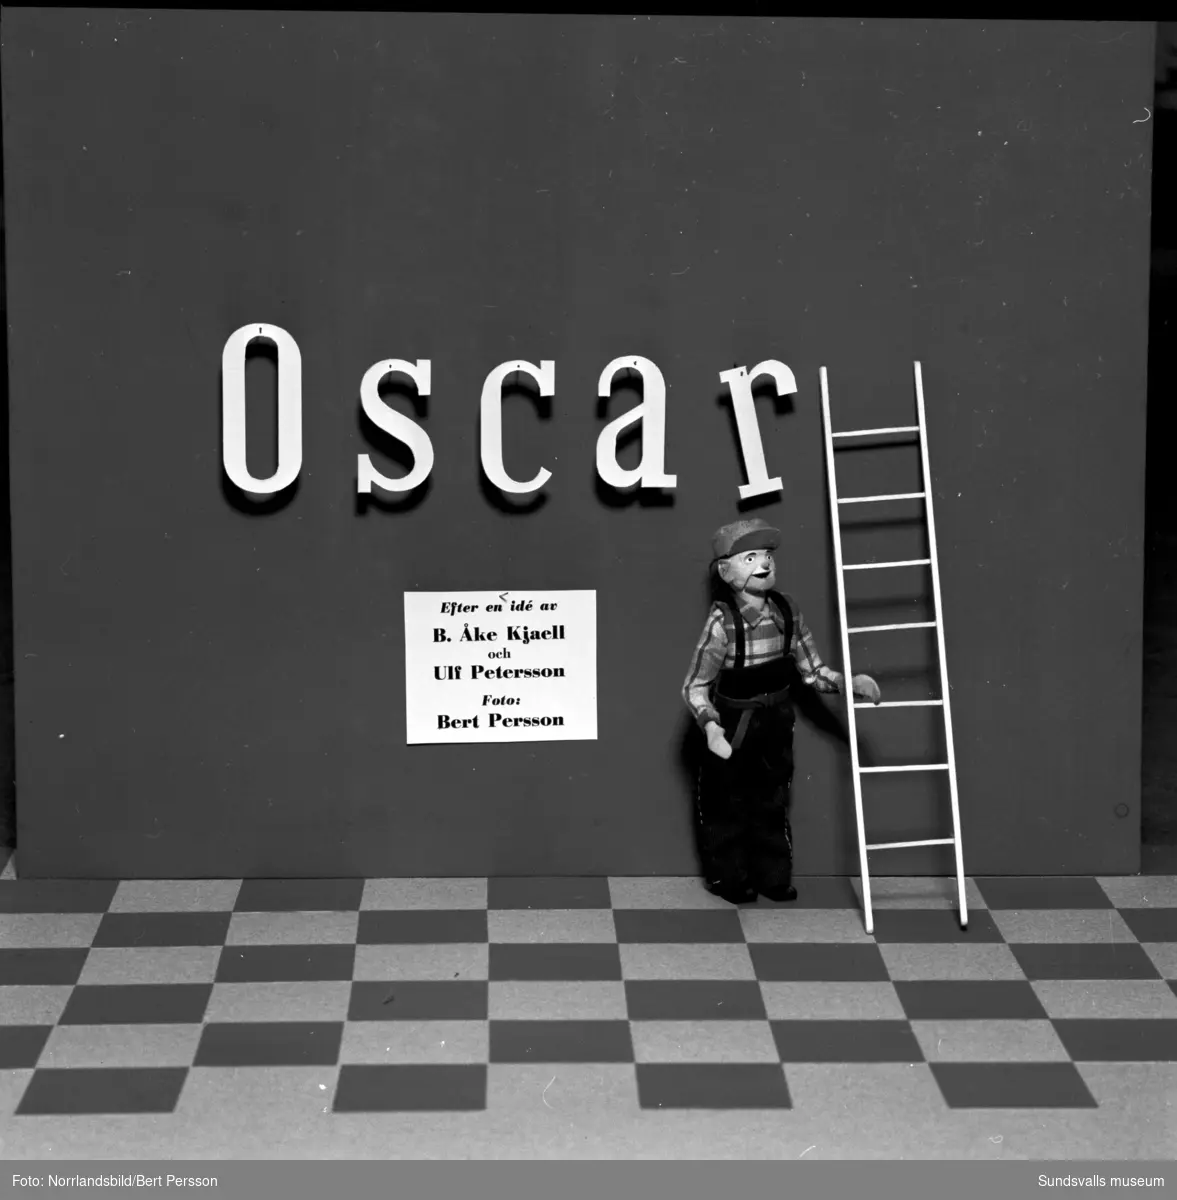 Bildserie om SCA:s seriefigur Oscar som råkar illa ut i en arbetsplatsolycka.